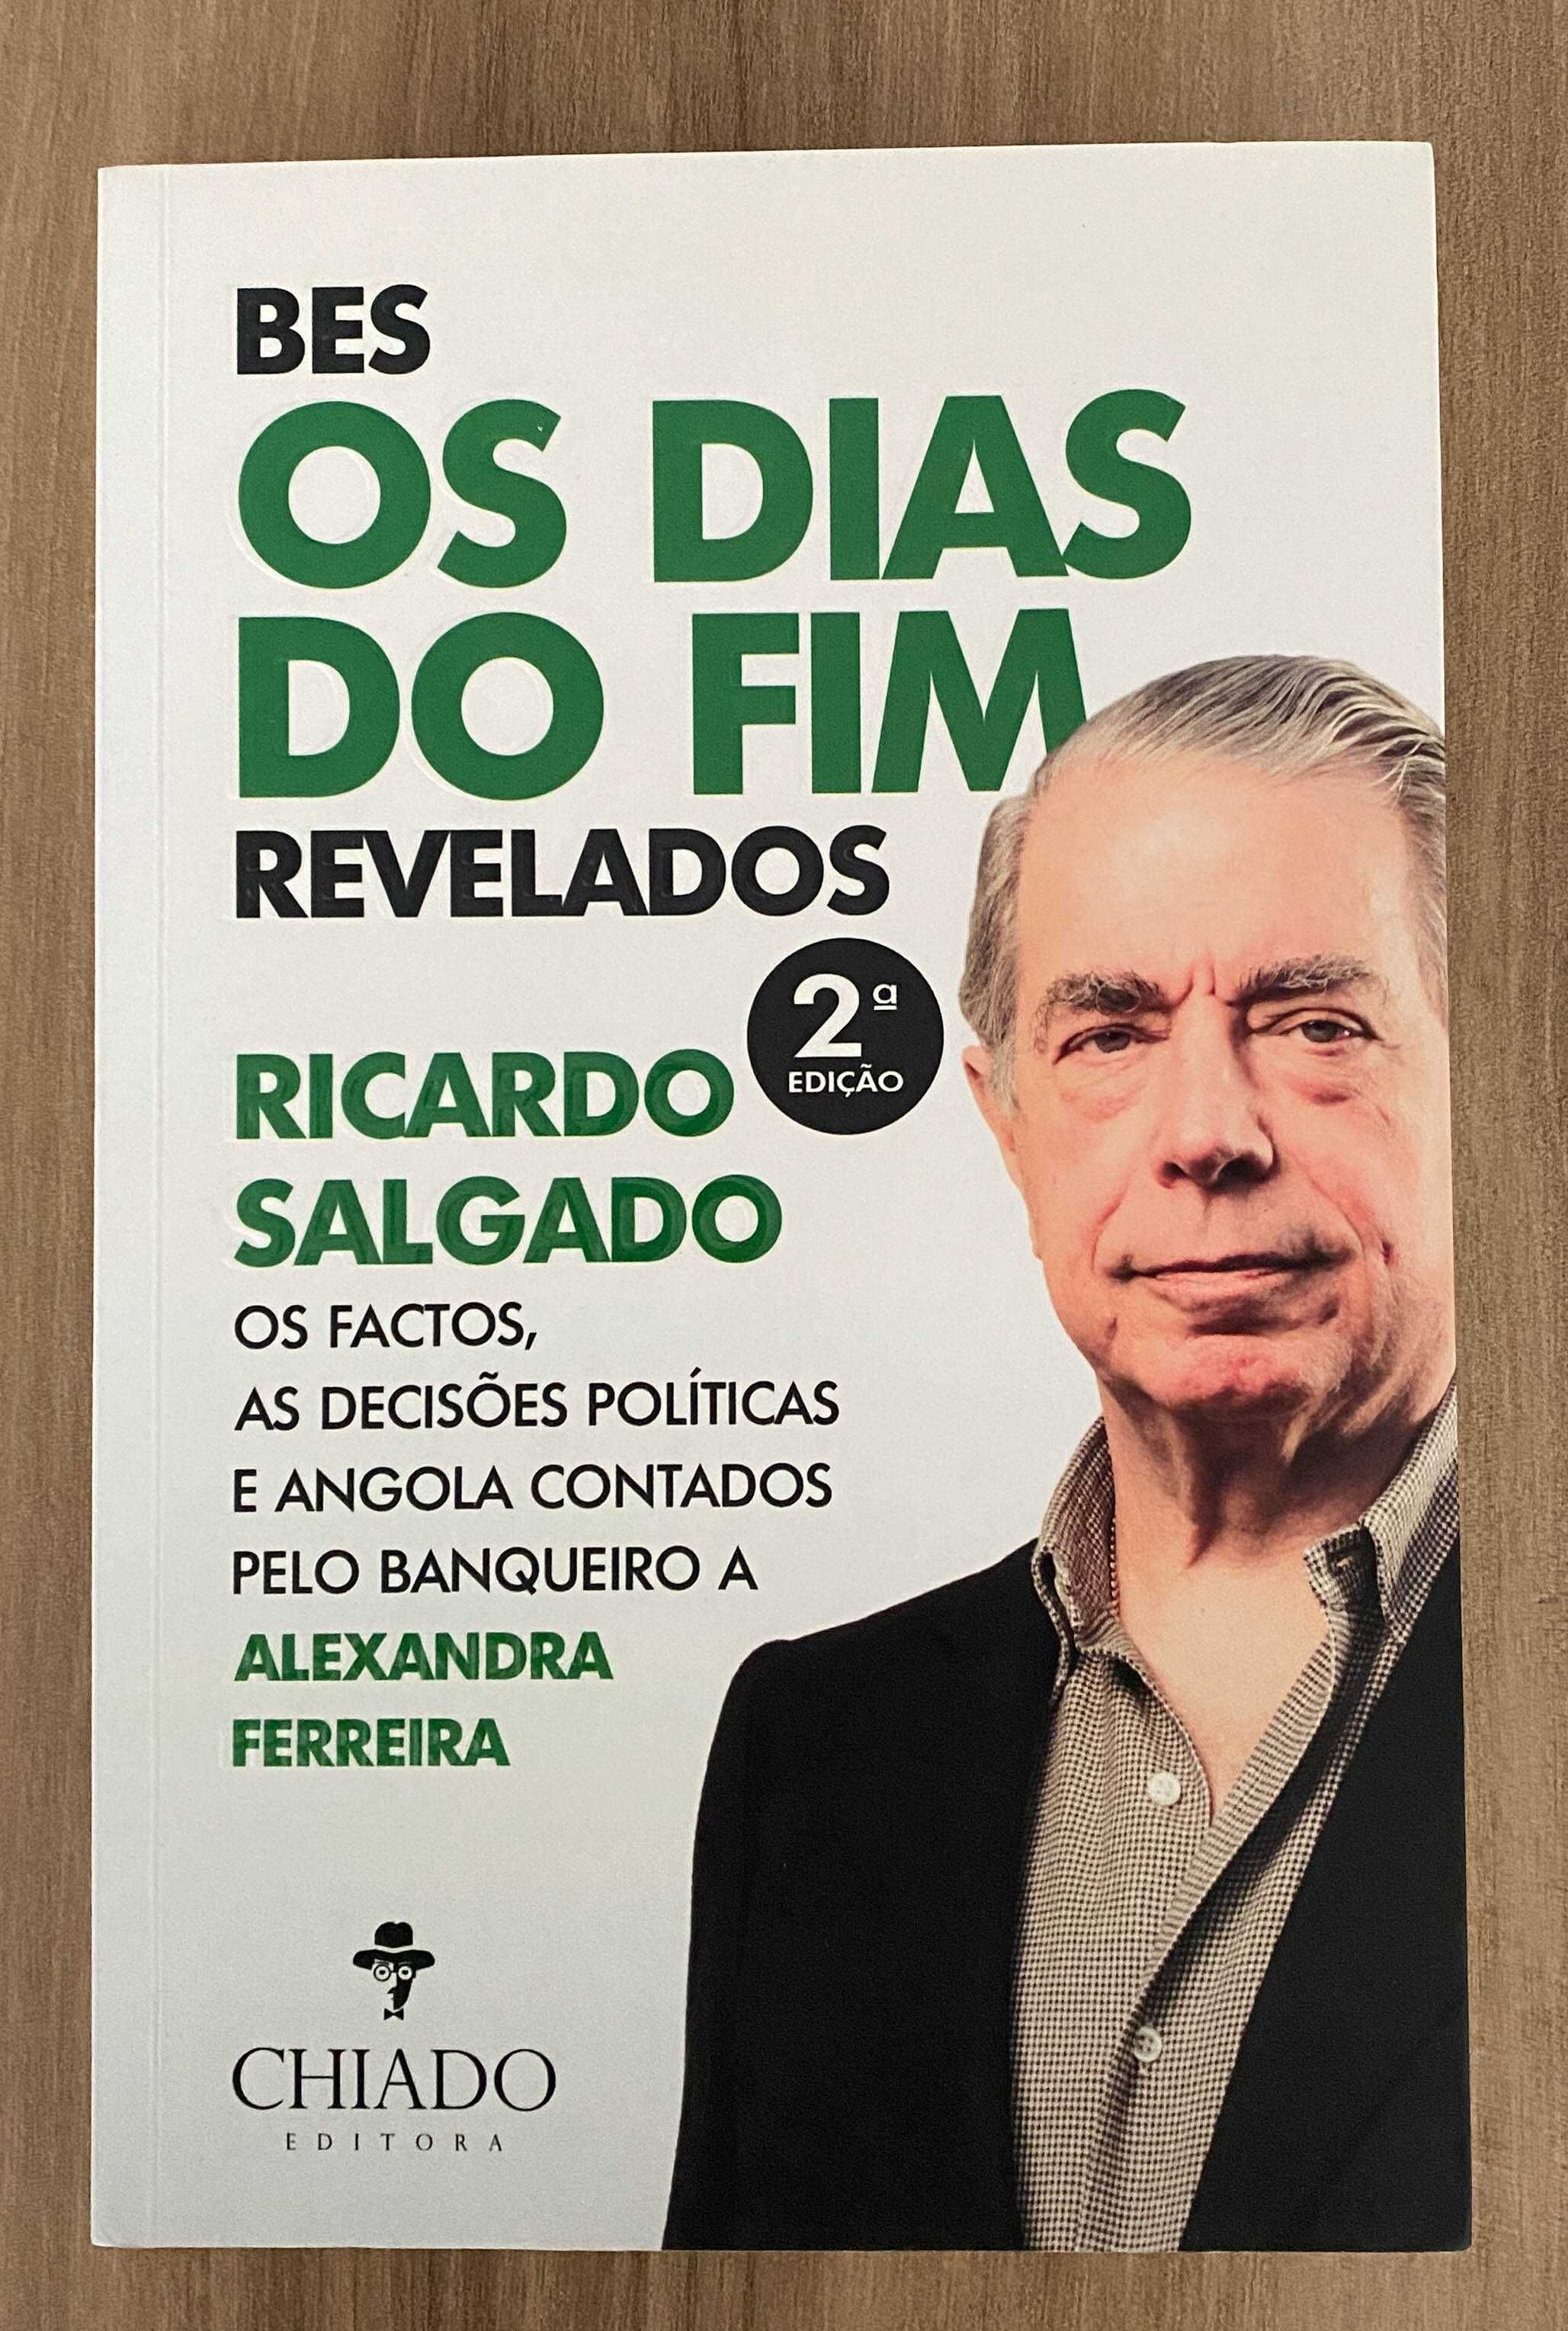 BES, Os Dias do Fim Revelados - Alexandra Almeida Ferreira